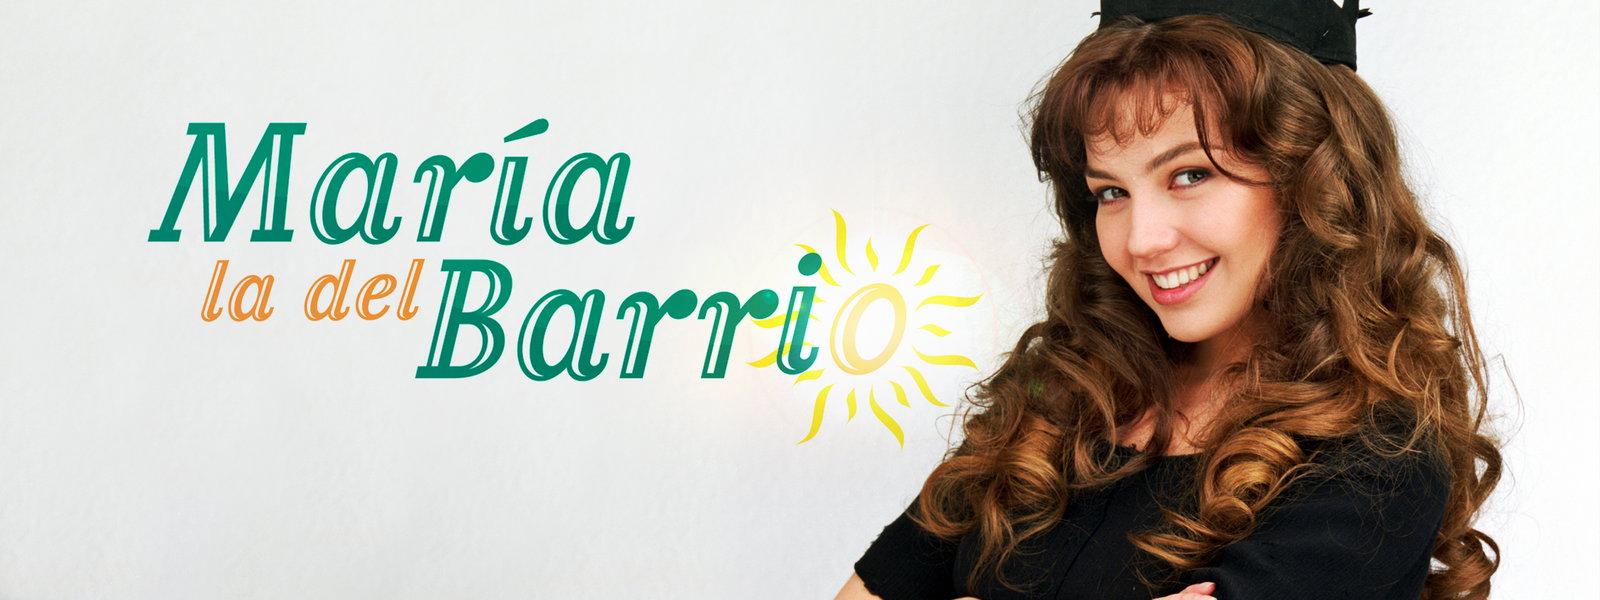 المسلسلات المكسيكية - ماريا ابنت الحي